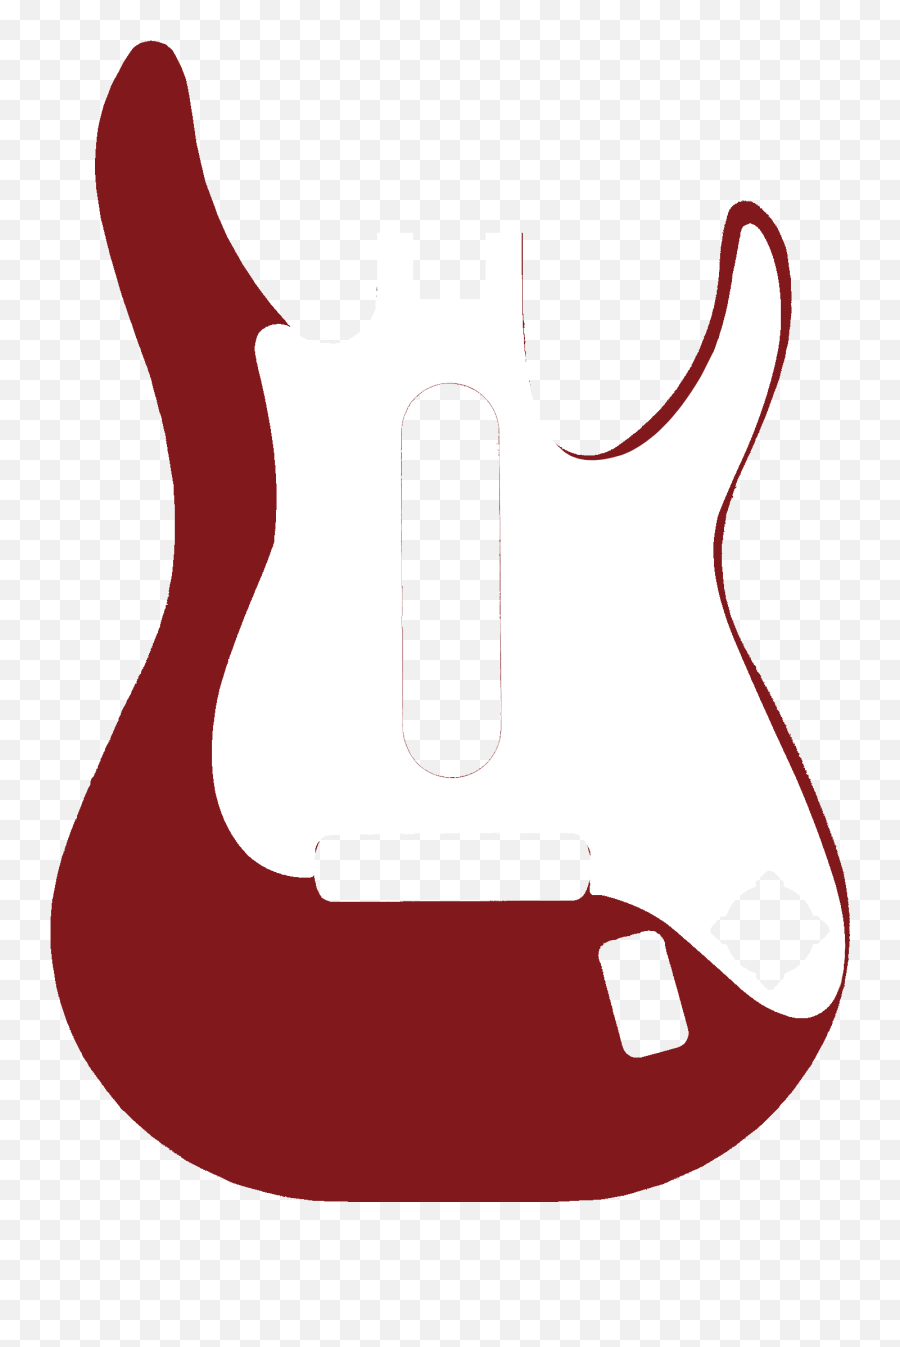 Band Hero Guitar Faceplate - Guitar Hero Faceplates Bulk Emoji,Rock Metal Sign Emoticon Template Gimp